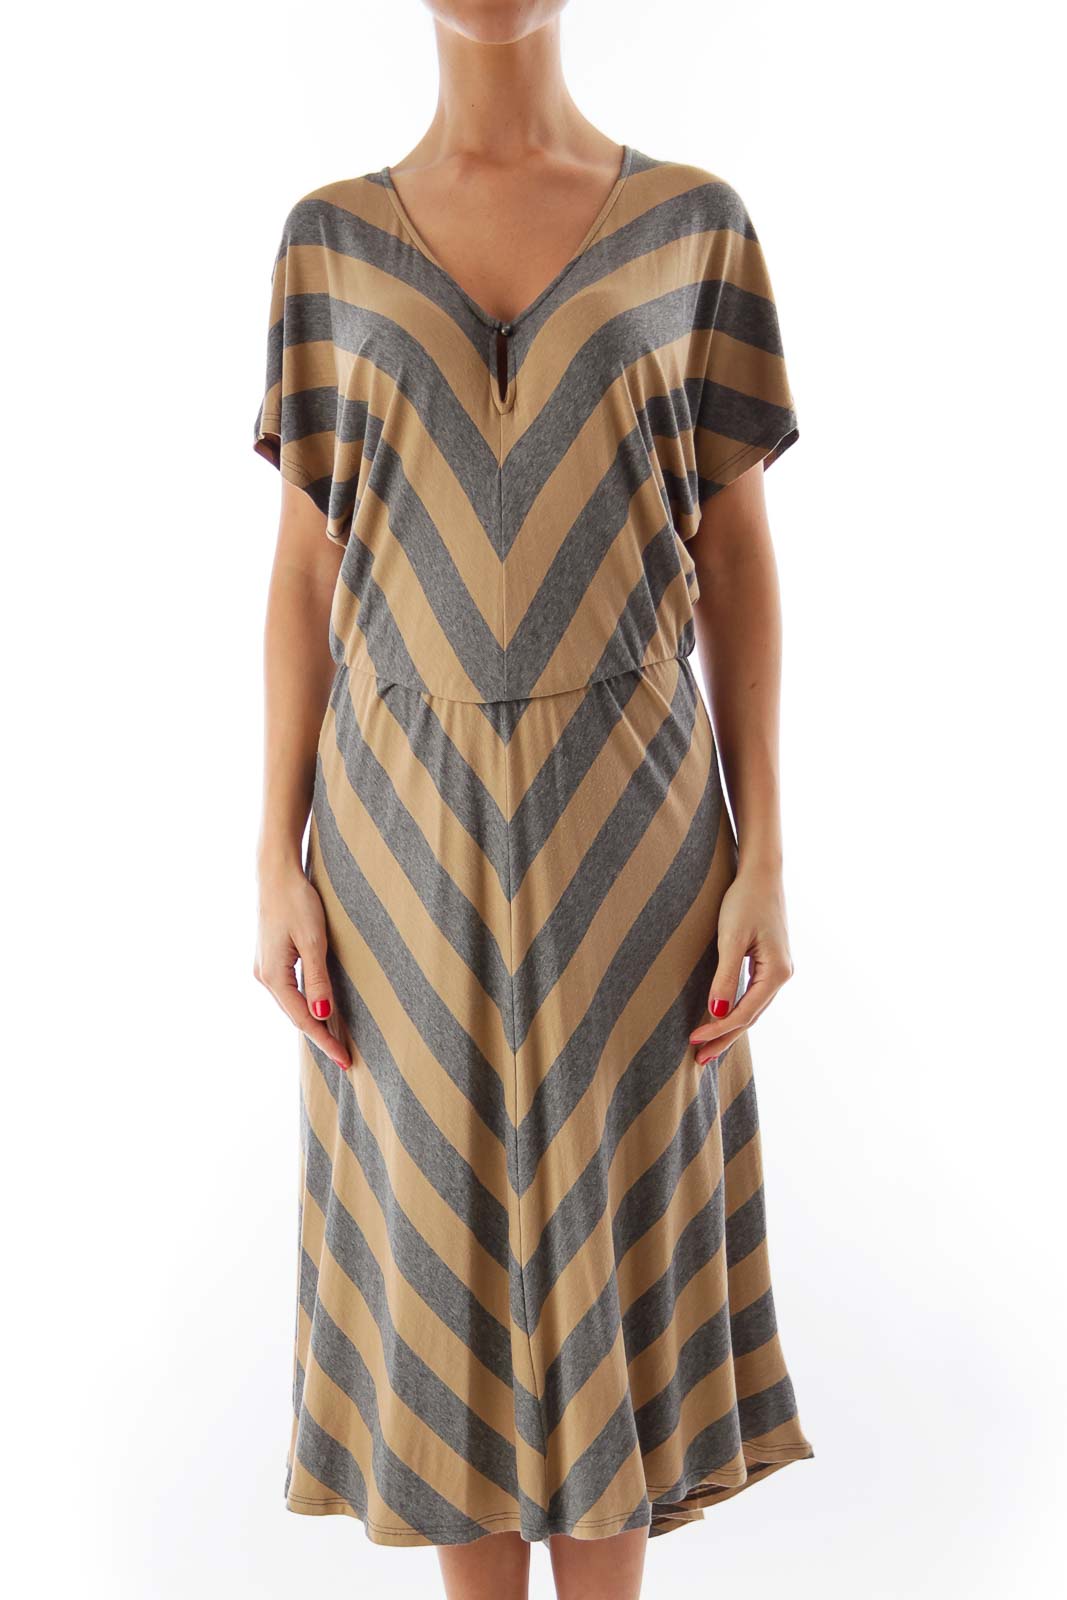 Beige & Gray Stripe Dress Front